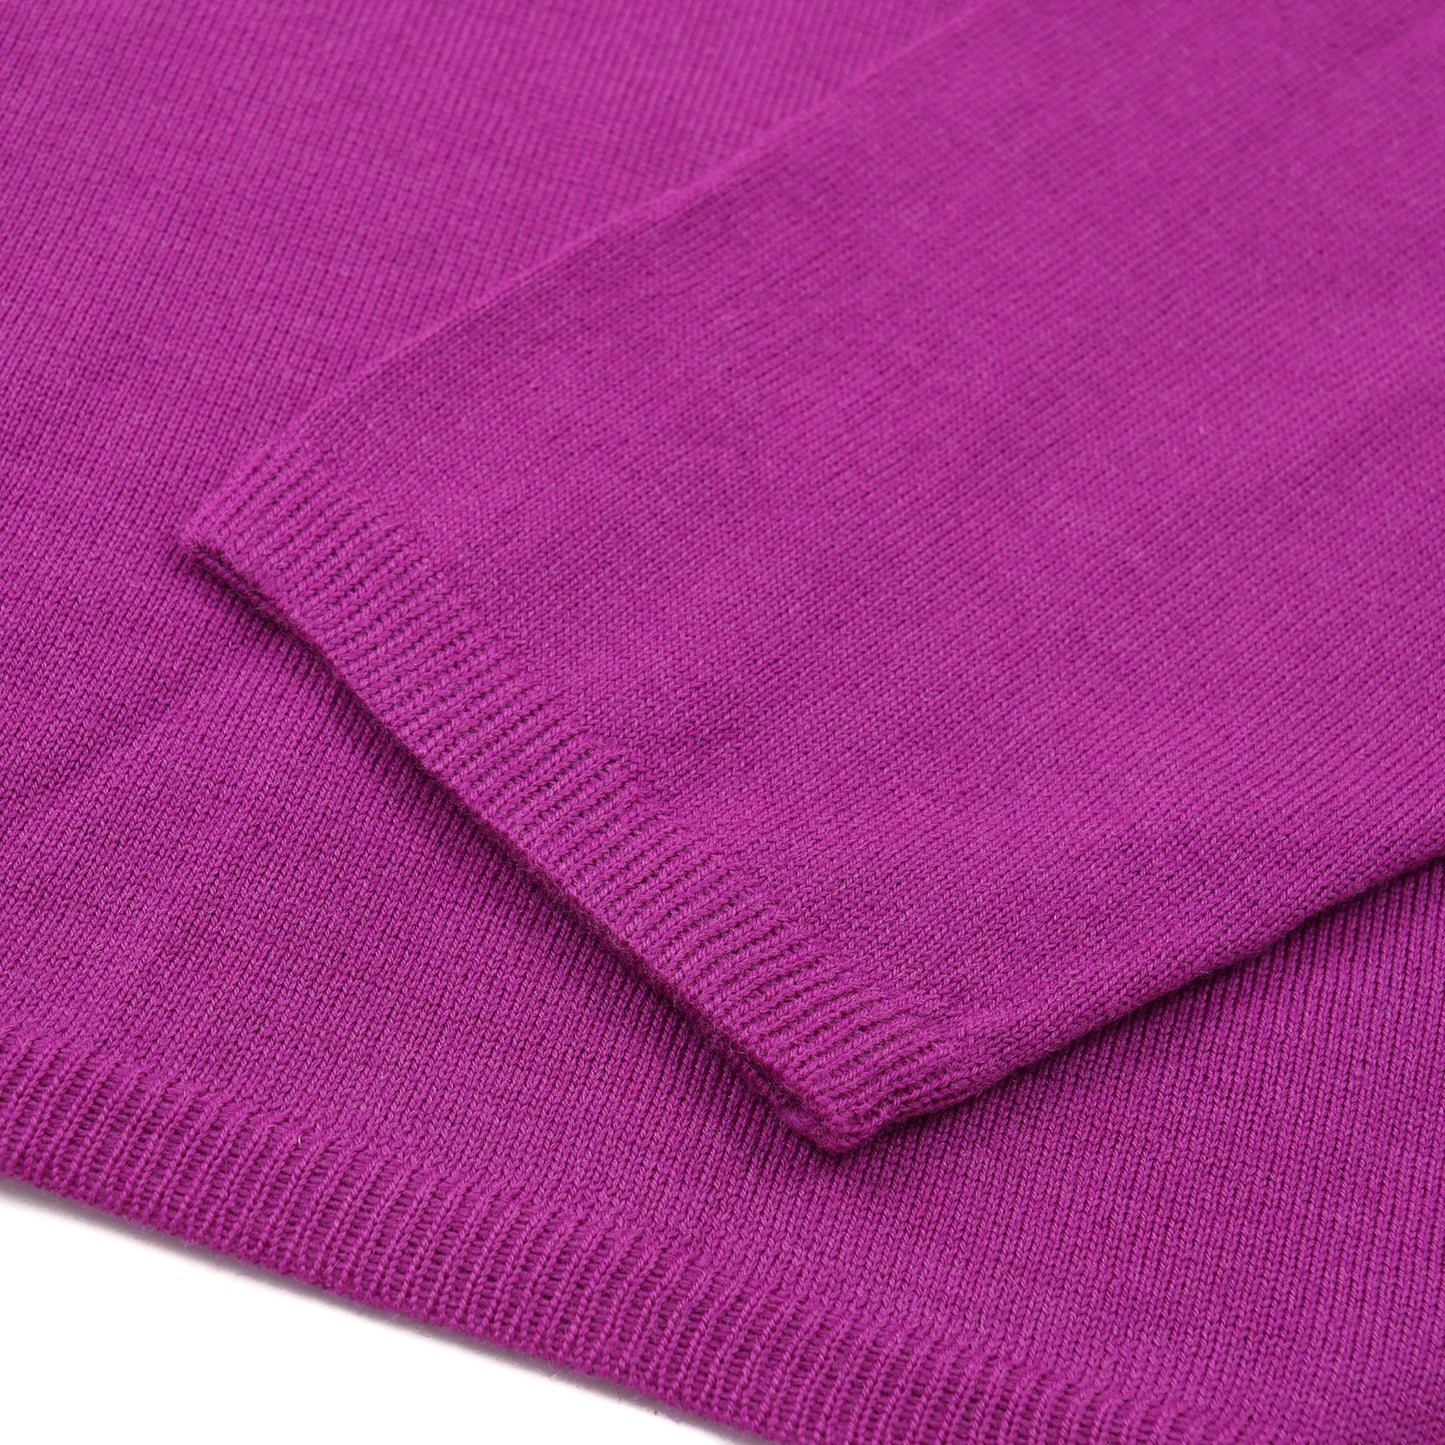 Cruciani Extrafine Cotton Sweater - Top Shelf Apparel